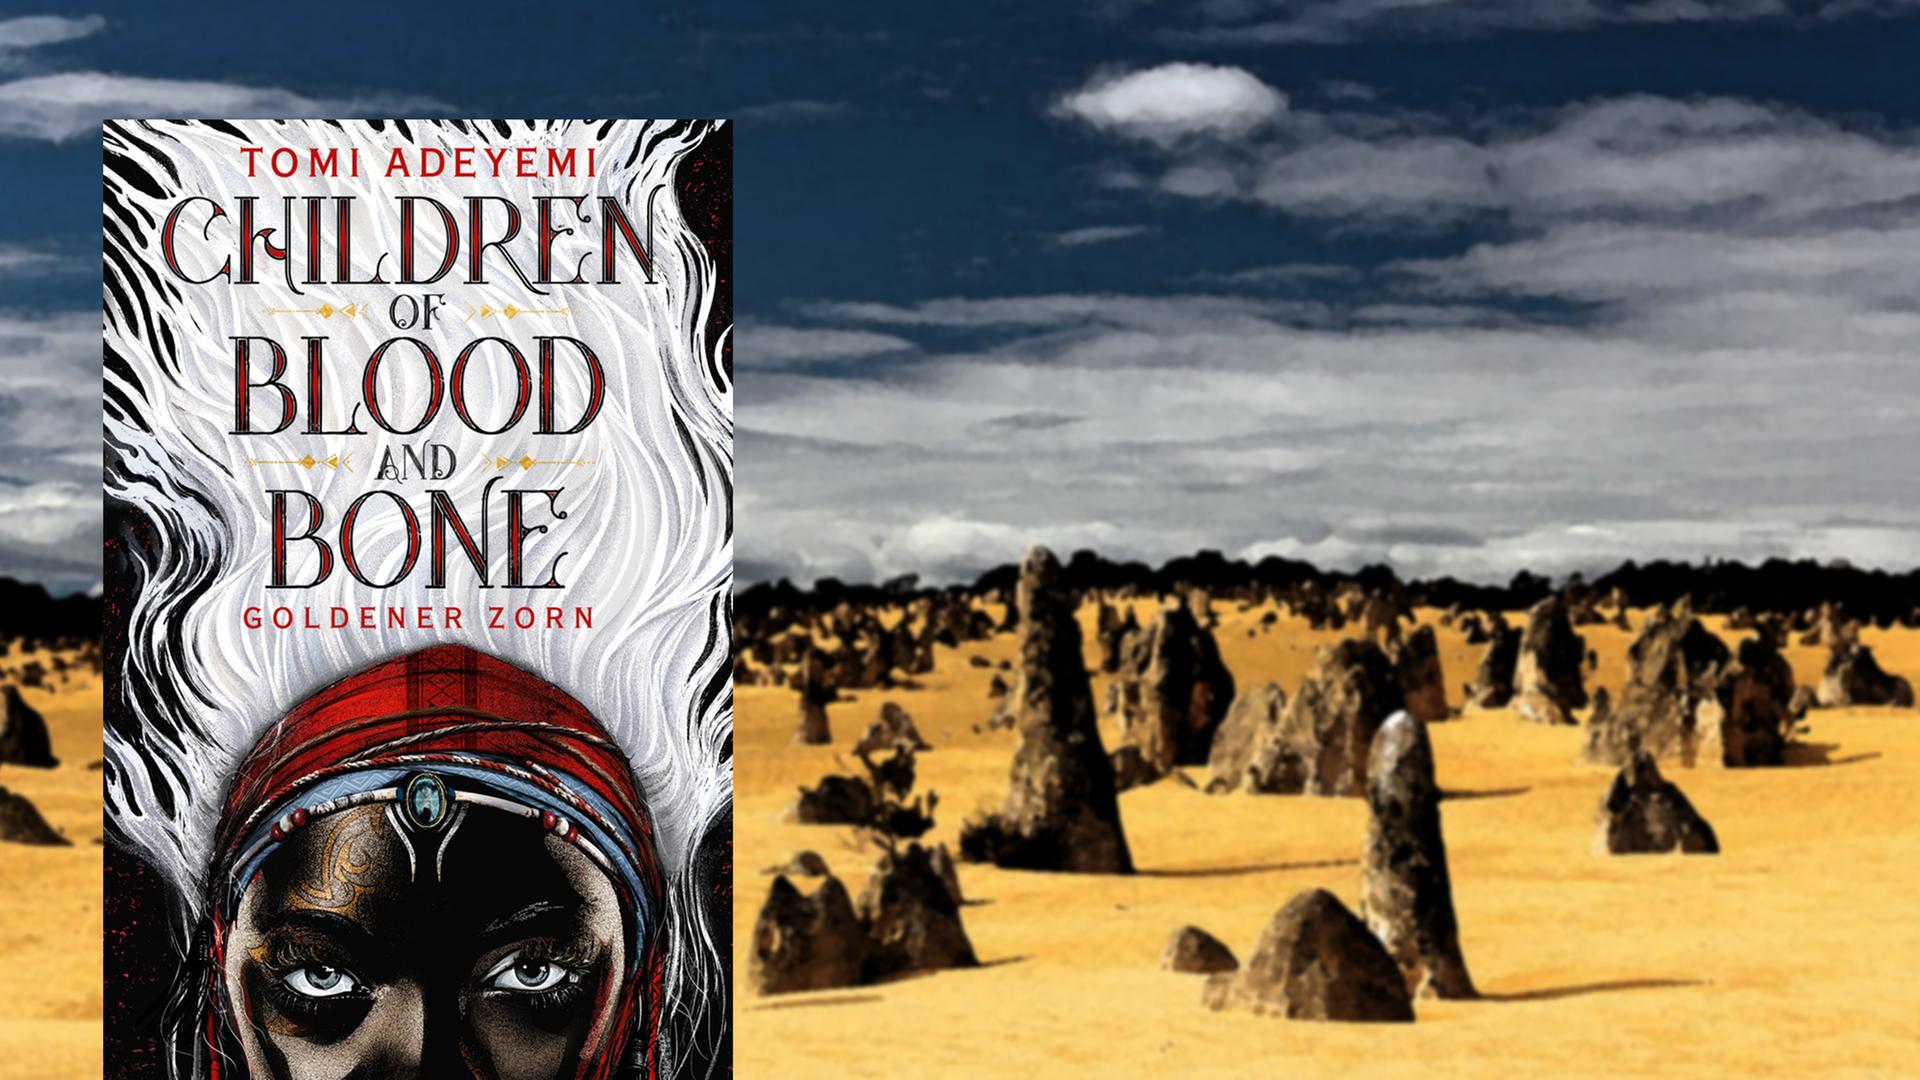 Buchcover "Children of Blood and Bone. Goldener Zorn" von Tomi Adeyemi